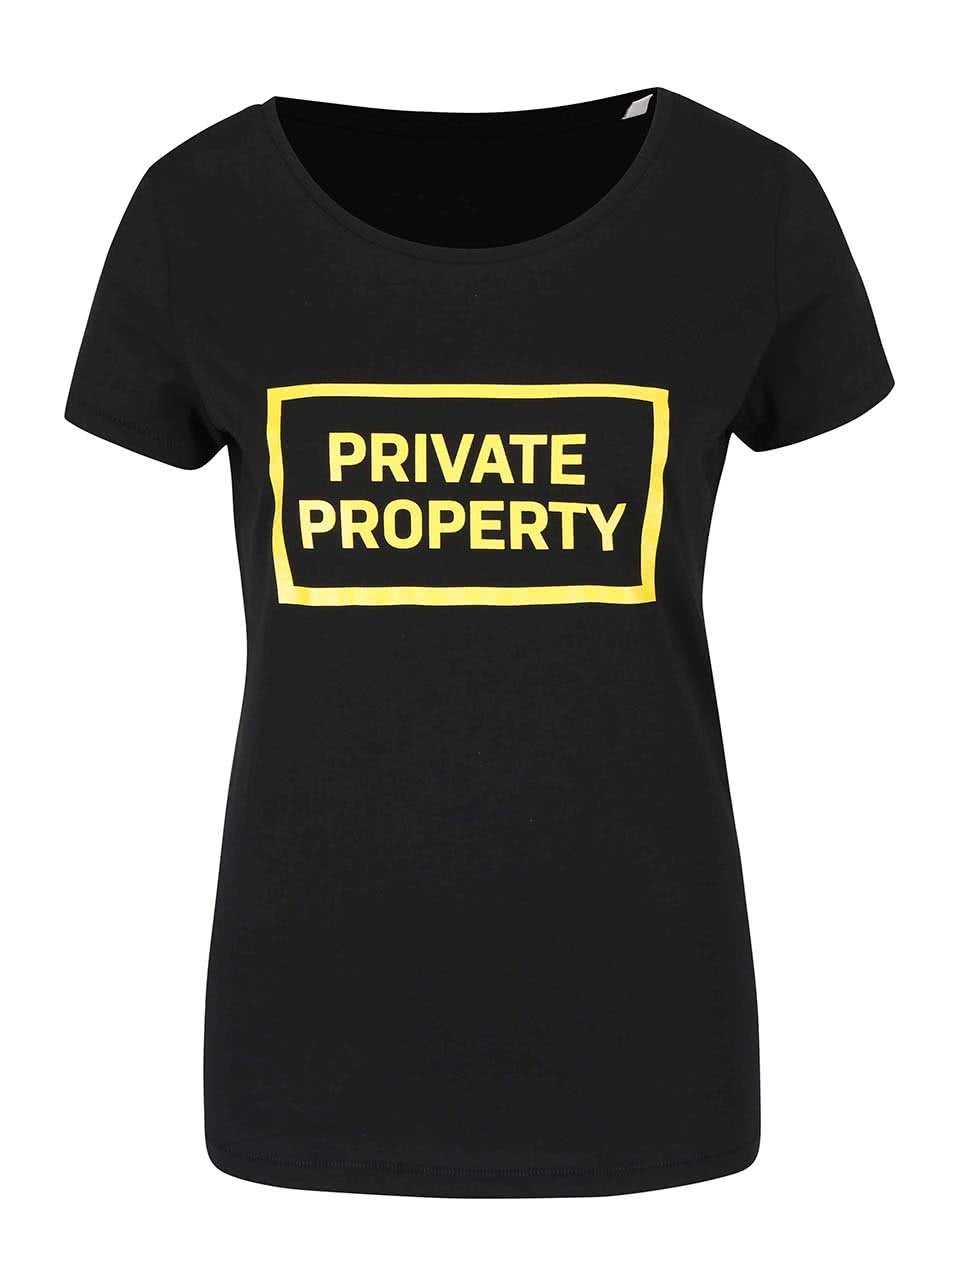 Černé dámské tričko ZOOT Originál Private Property